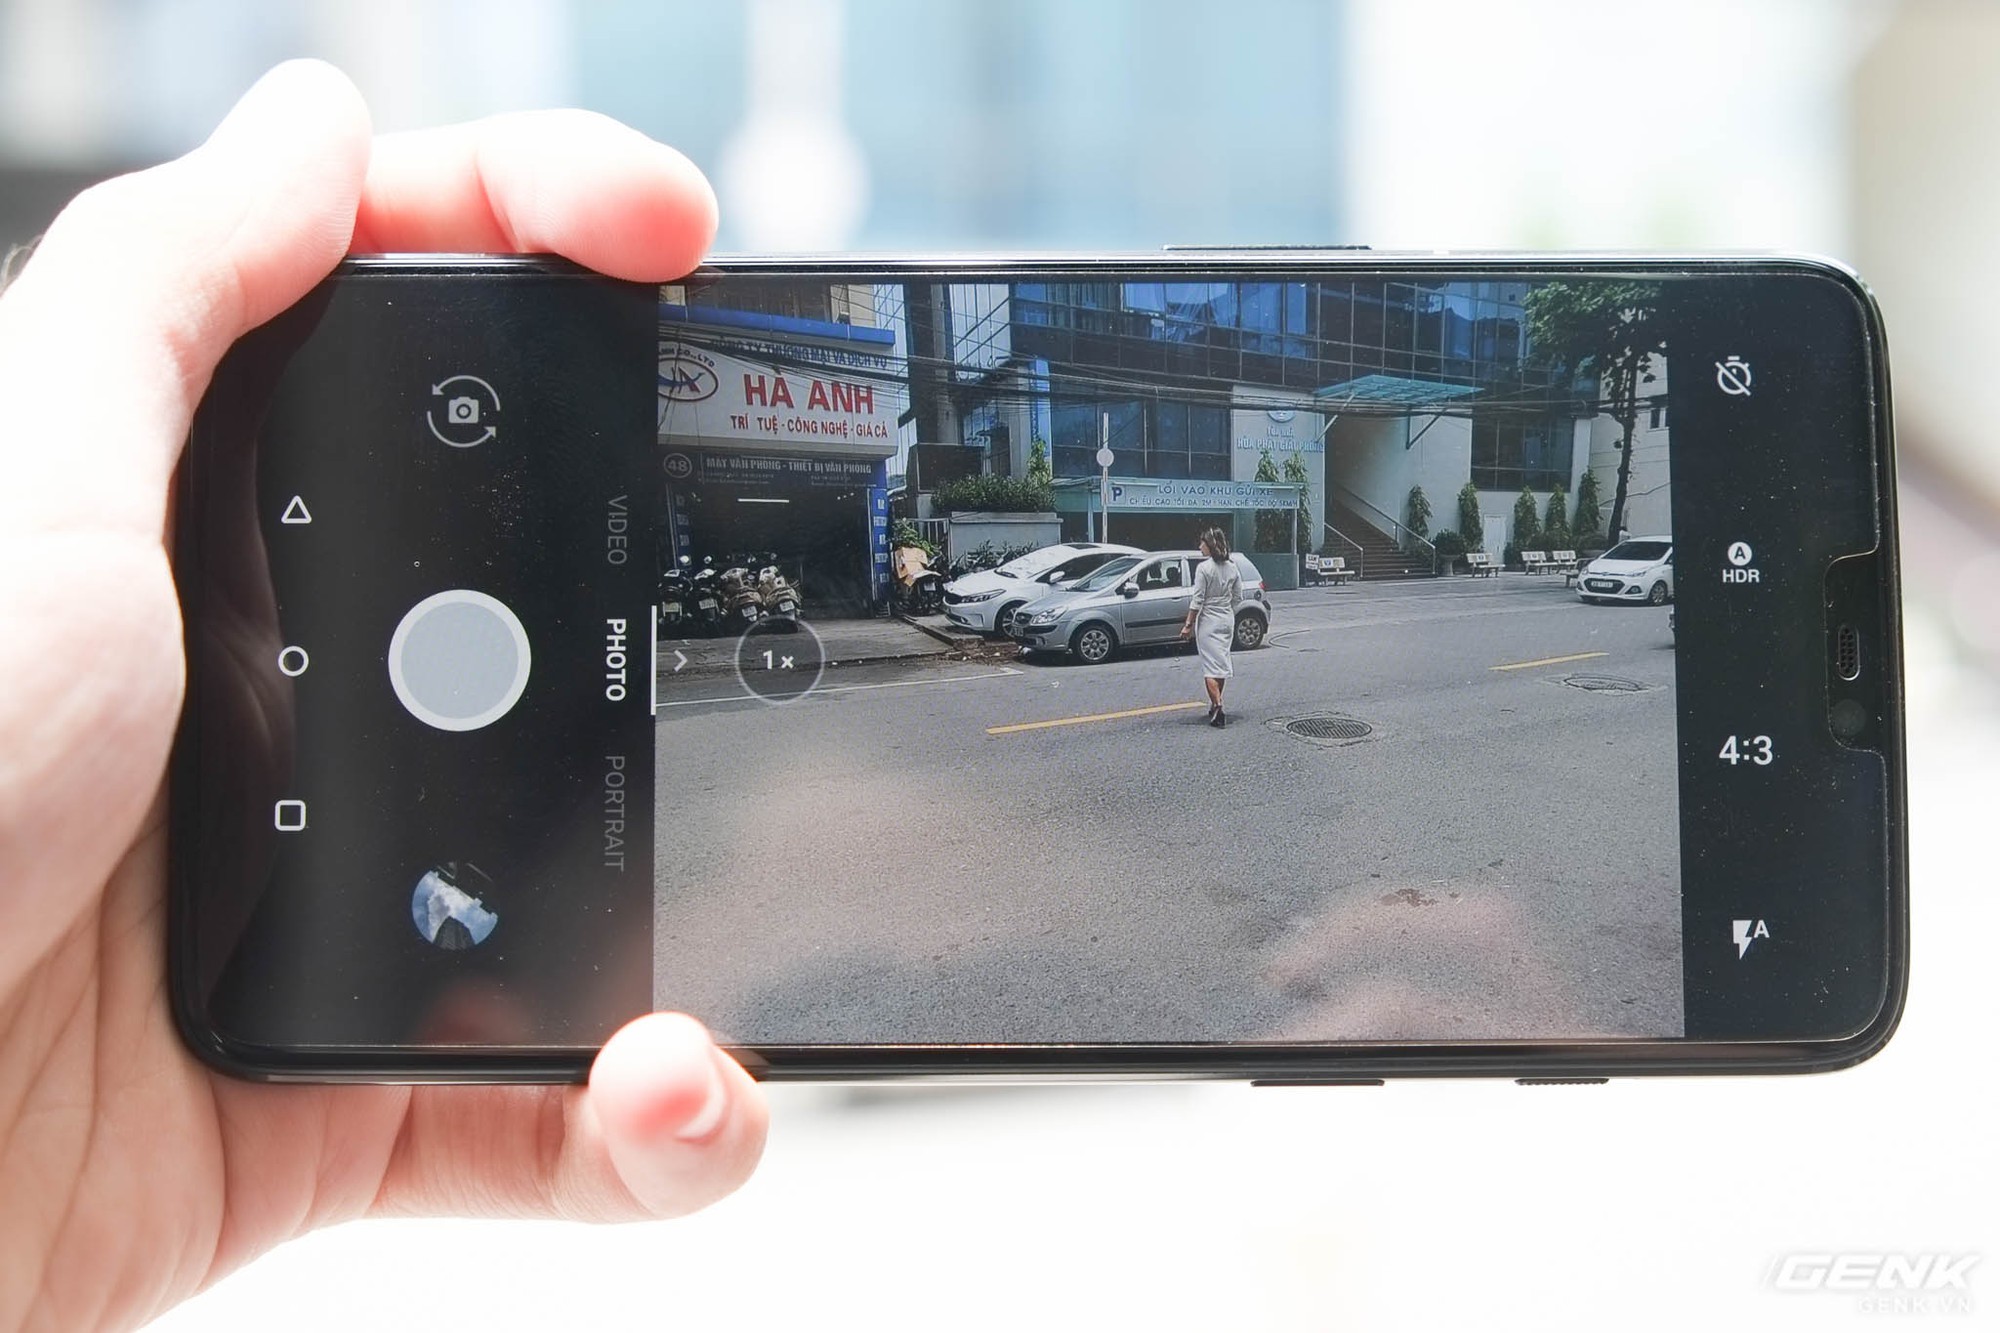 Hệ thống camera kép của OnePlus 6 được nâng cấp với hai camera độ phân giải 16 MP f/1.7 và 20 MP f/1.7. Trong đó, camera chính nay đã được tích hợp OIS (chống rung quang học) - một điểm thiếu vắng trên OnePlus 5 và 5T. Nó còn có khả năng quay slow-motion 480fps ở độ phân giải 720p